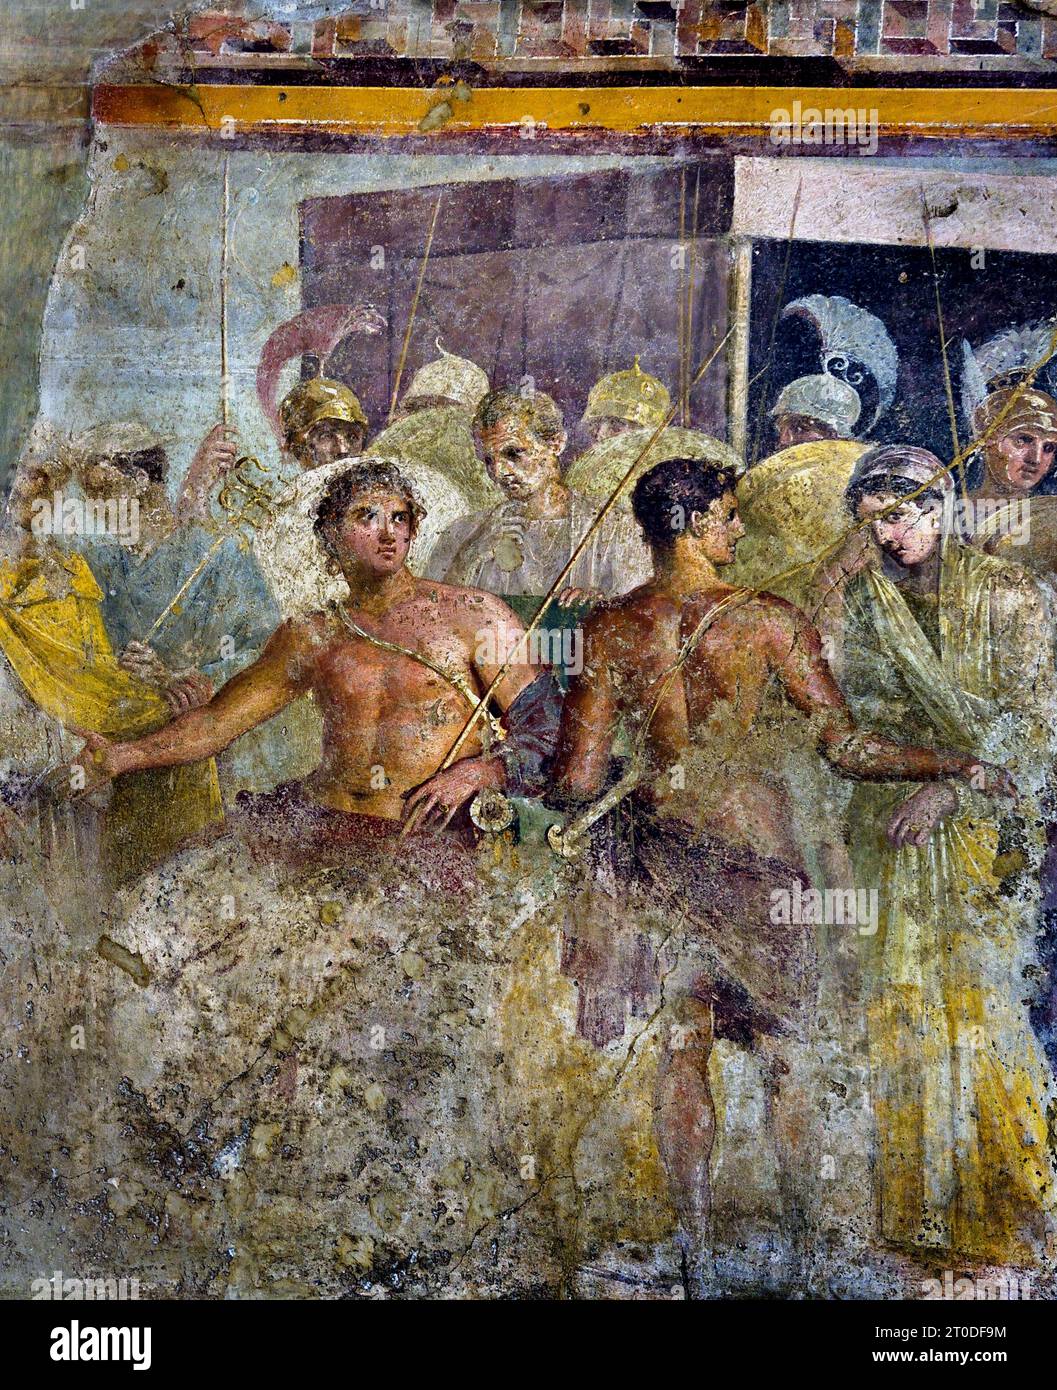 La reddition d'Achille de Briseis à Agamemnon, (Troie) de la Maison du poète tragique Fresco Pompéi ville romaine est située près de Naples dans la région Campanie de l'Italie. Pompéi a été enterré sous 4-6 m de cendres volcaniques et de ponce lors de l'éruption du Vésuve en 79. Italie Achille est forcé de céder Briseis, le prisonnier dont il était tombé amoureux, à Agamemnon, après que Agamemnon ait dû rendre Chryseis à son père, Chryses, le prêtre d'Apollon. Maison du poète tragique. Banque D'Images